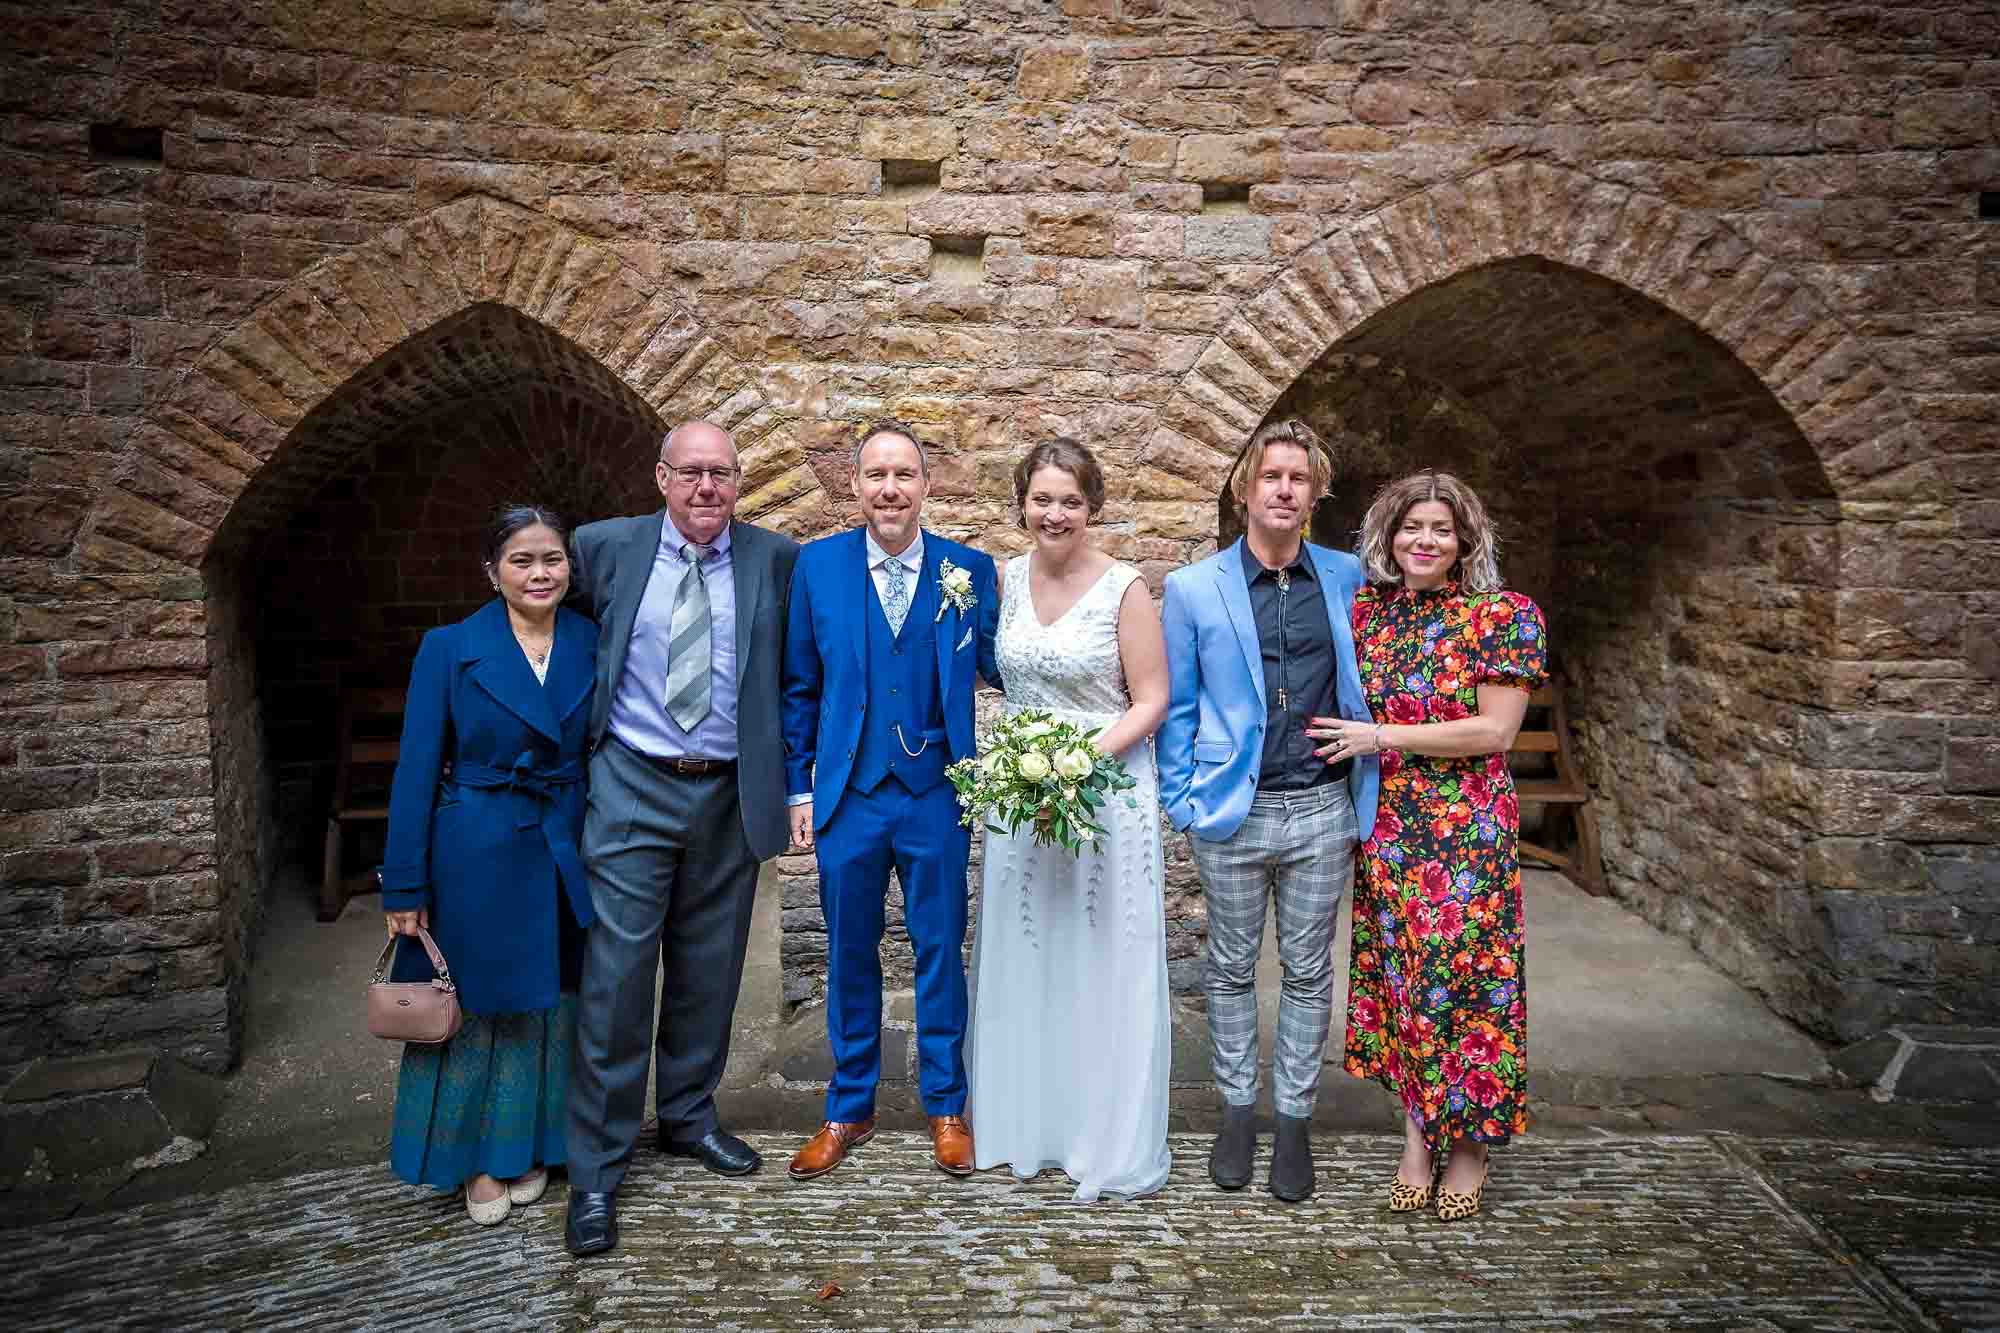 Posed family wedding portrait taken in Castell Coch courtyard